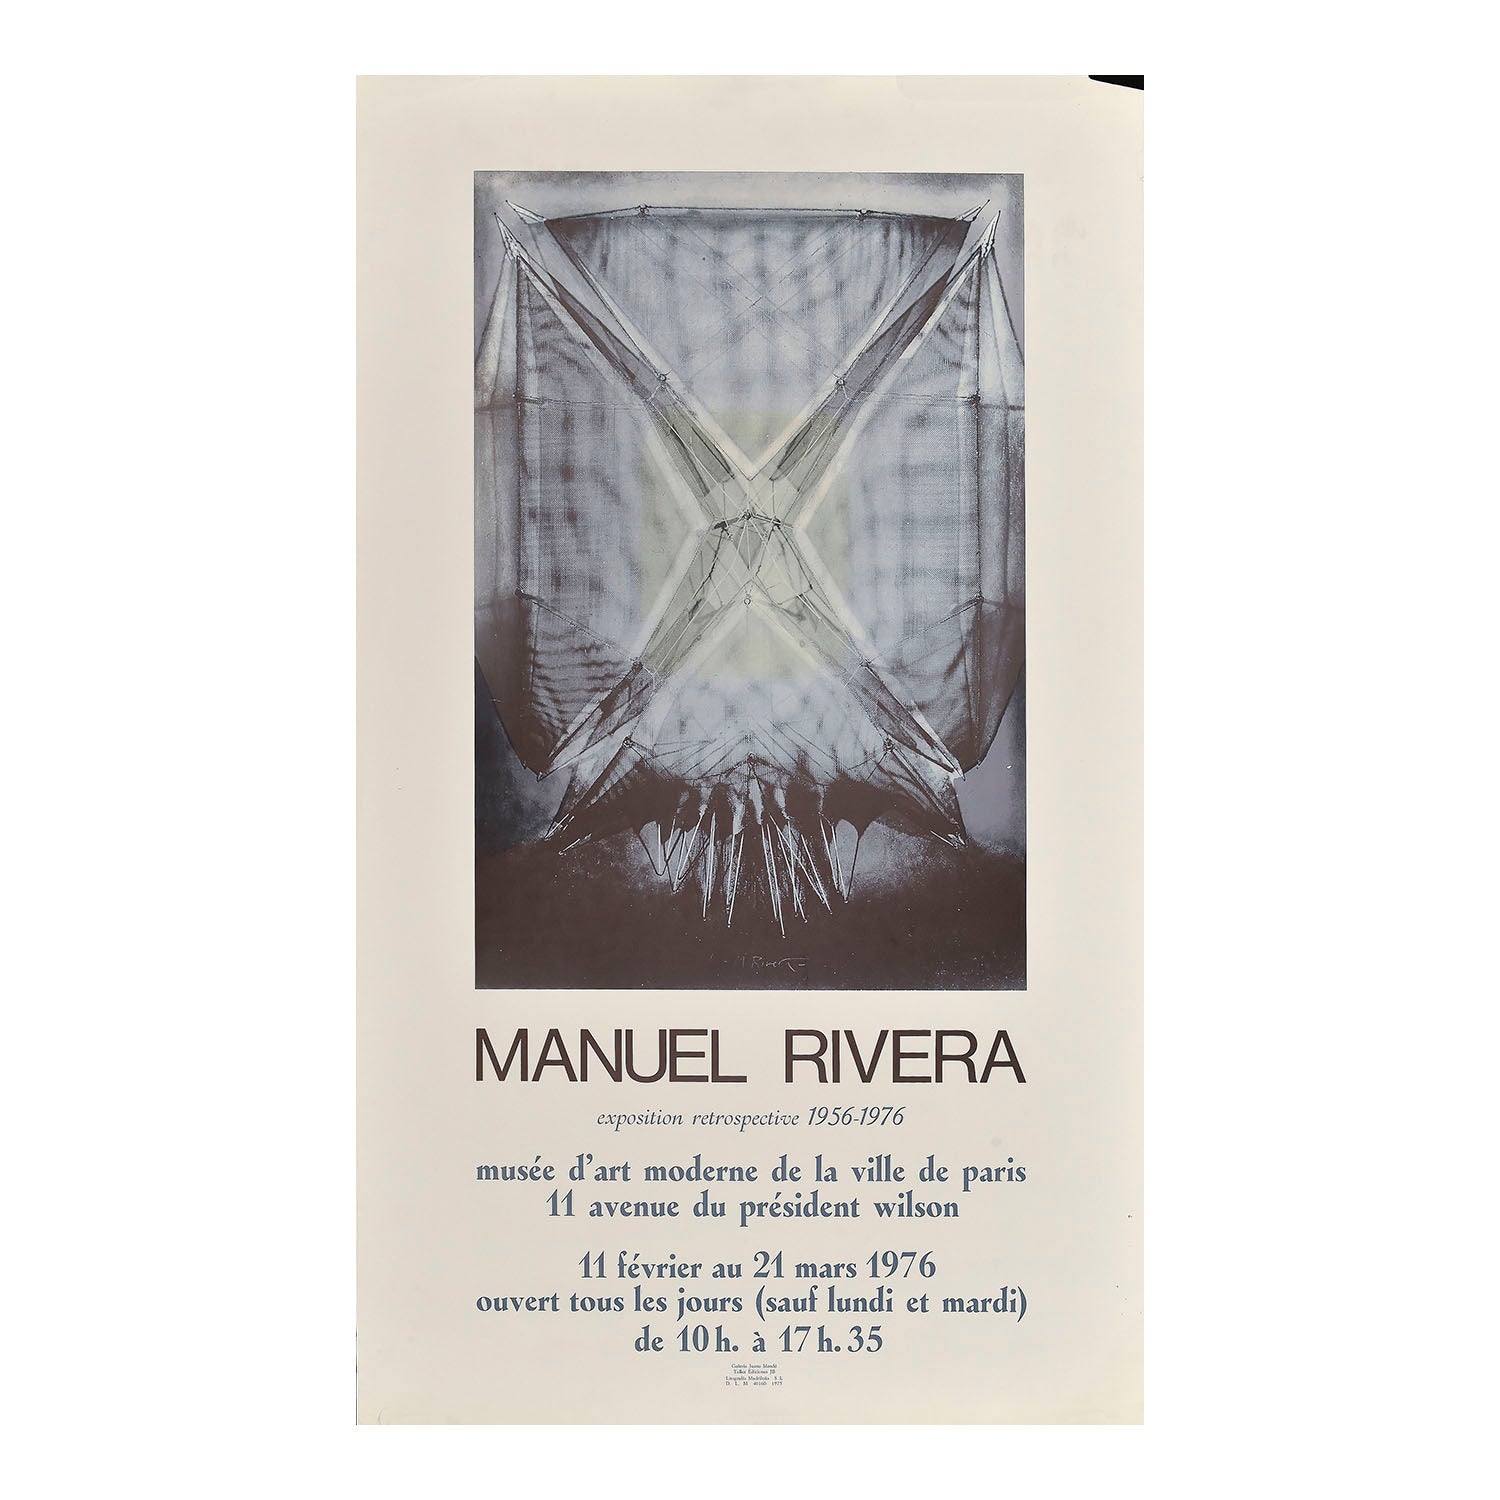 Original art exhibition poster, Manuel Rivera exposition retrospective 1956-1976, Musée d'Art Moderne de Paris, 1976. The design features an artwork by the Spanish painter Manuel Rivera (1927– 1995).